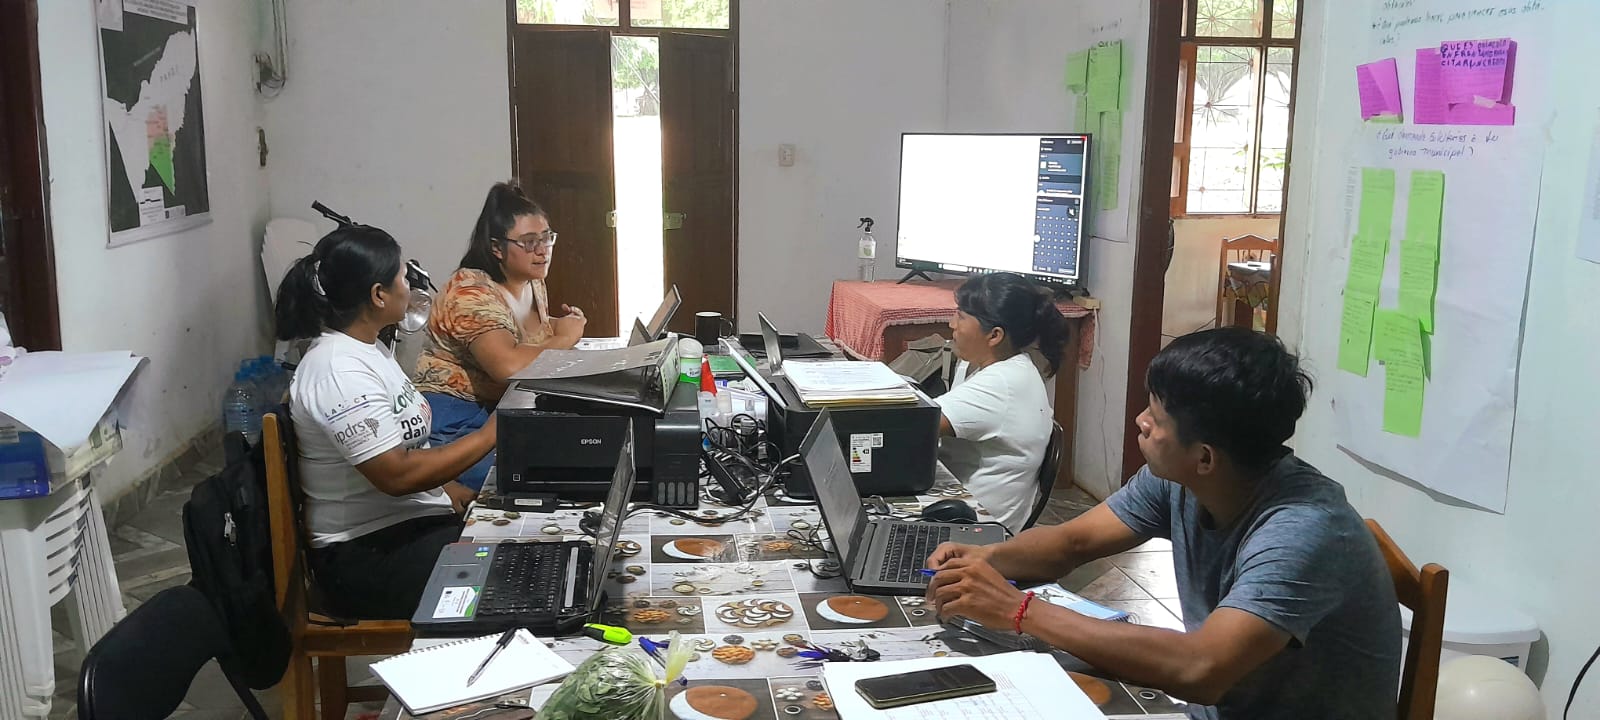 Acto de Socialización de Resultados Preliminares del Estudio “Sistemas de Mercado del Cacao y Frutos Amazónicos en el Municipio de Riberalta, Beni”